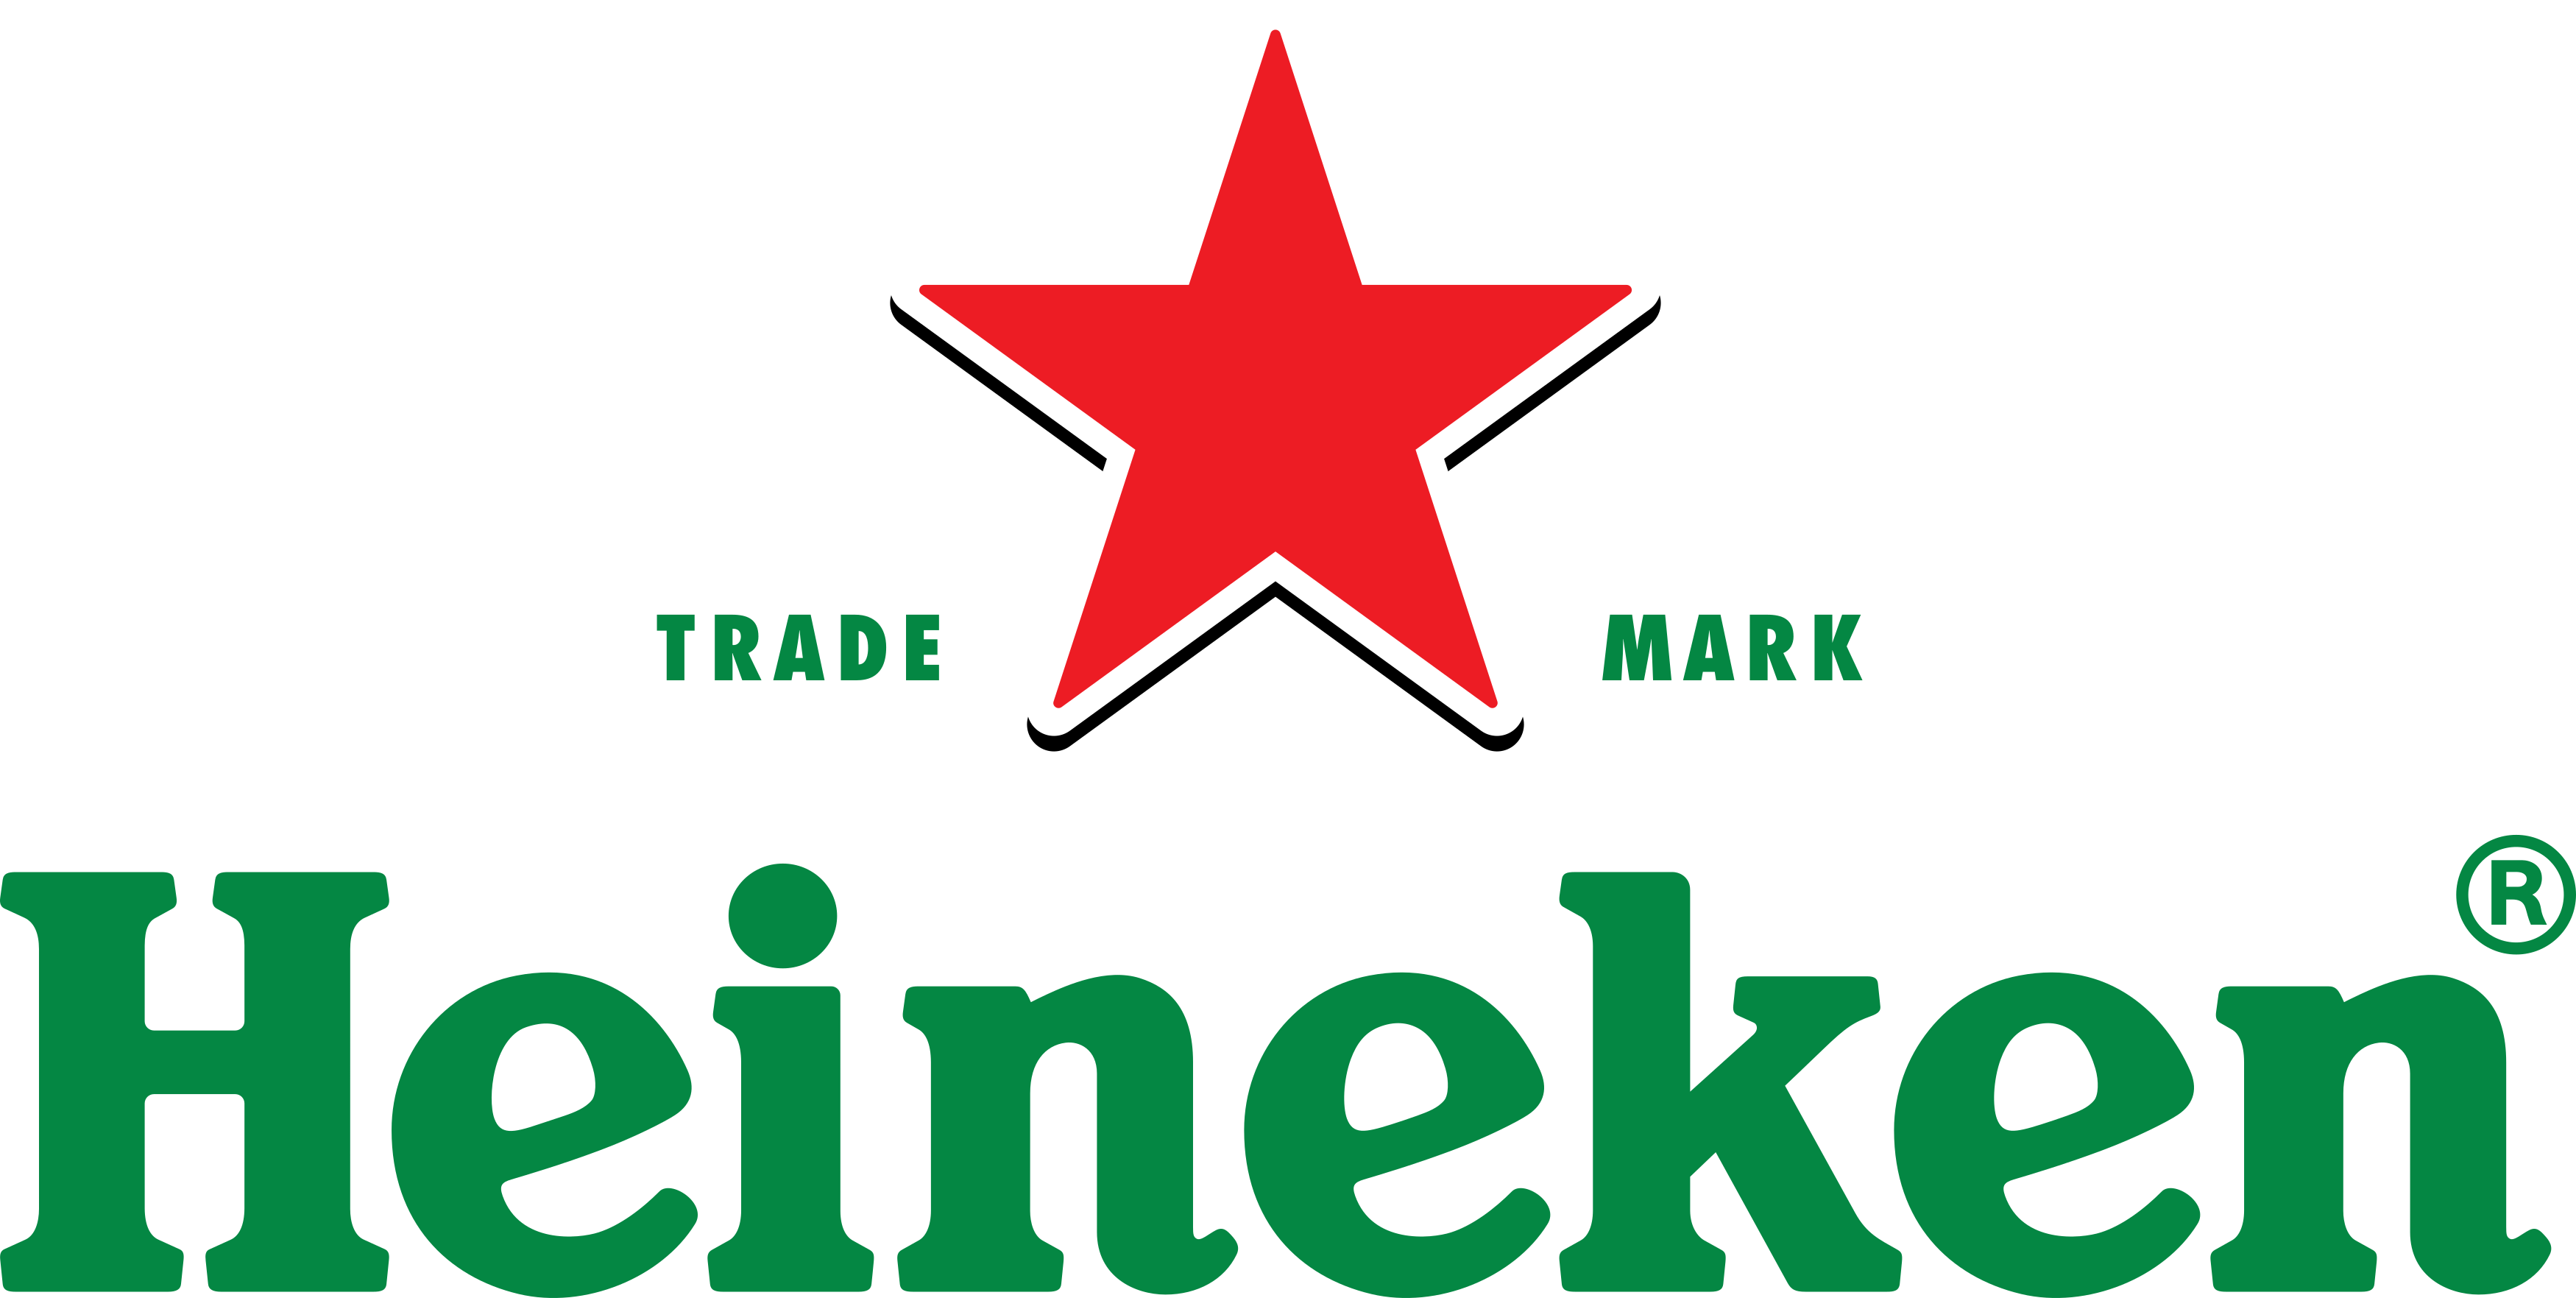 Heineken Logo 7.png 16 De Abril De 2017 197 Kb 3500 × 1763 - Heineken, Transparent background PNG HD thumbnail